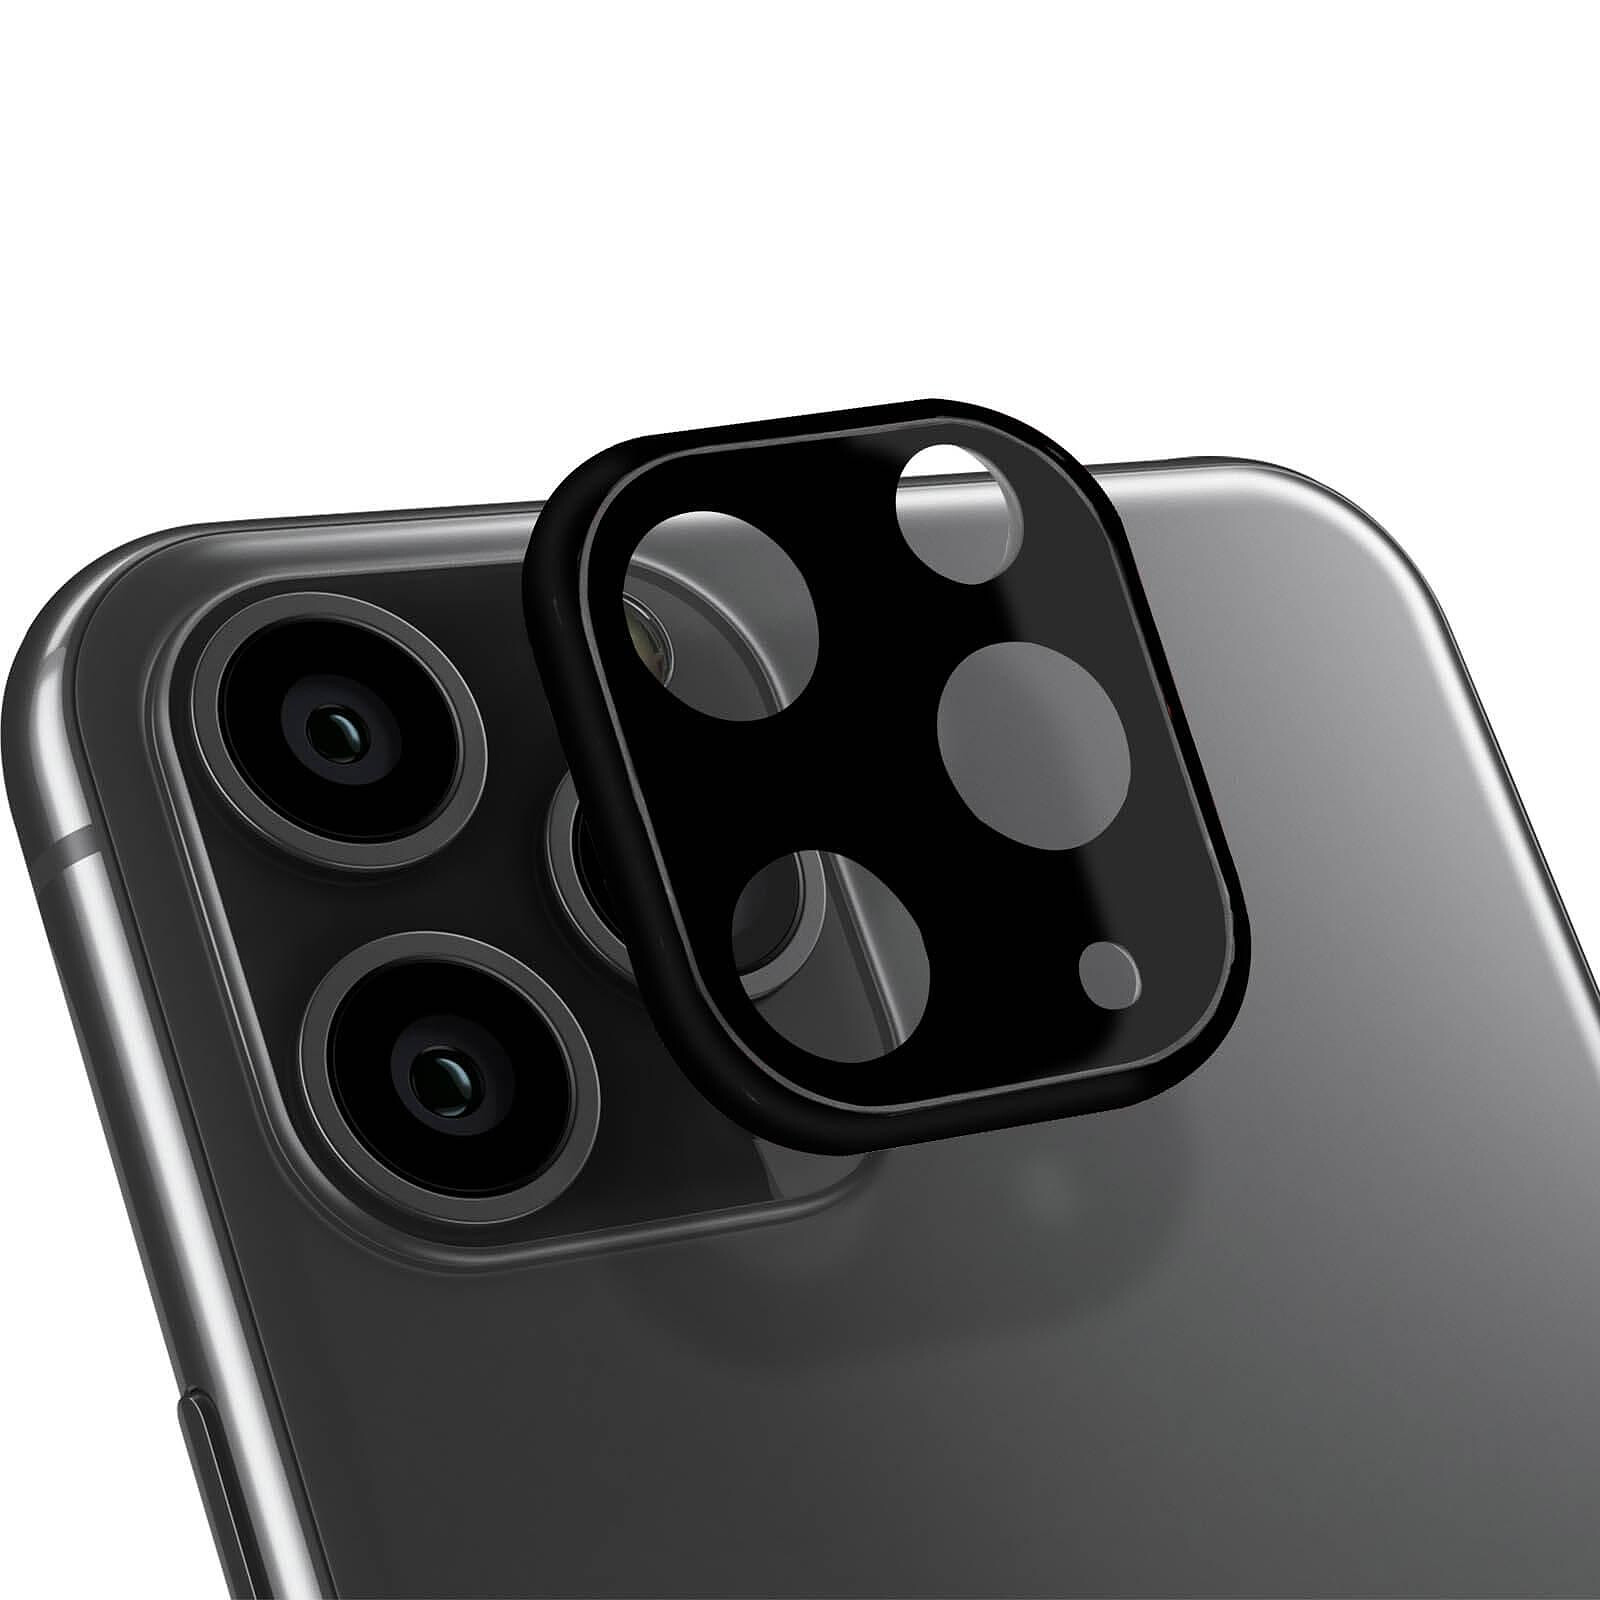 Vitre de protection caméra iPhone 11 Pro